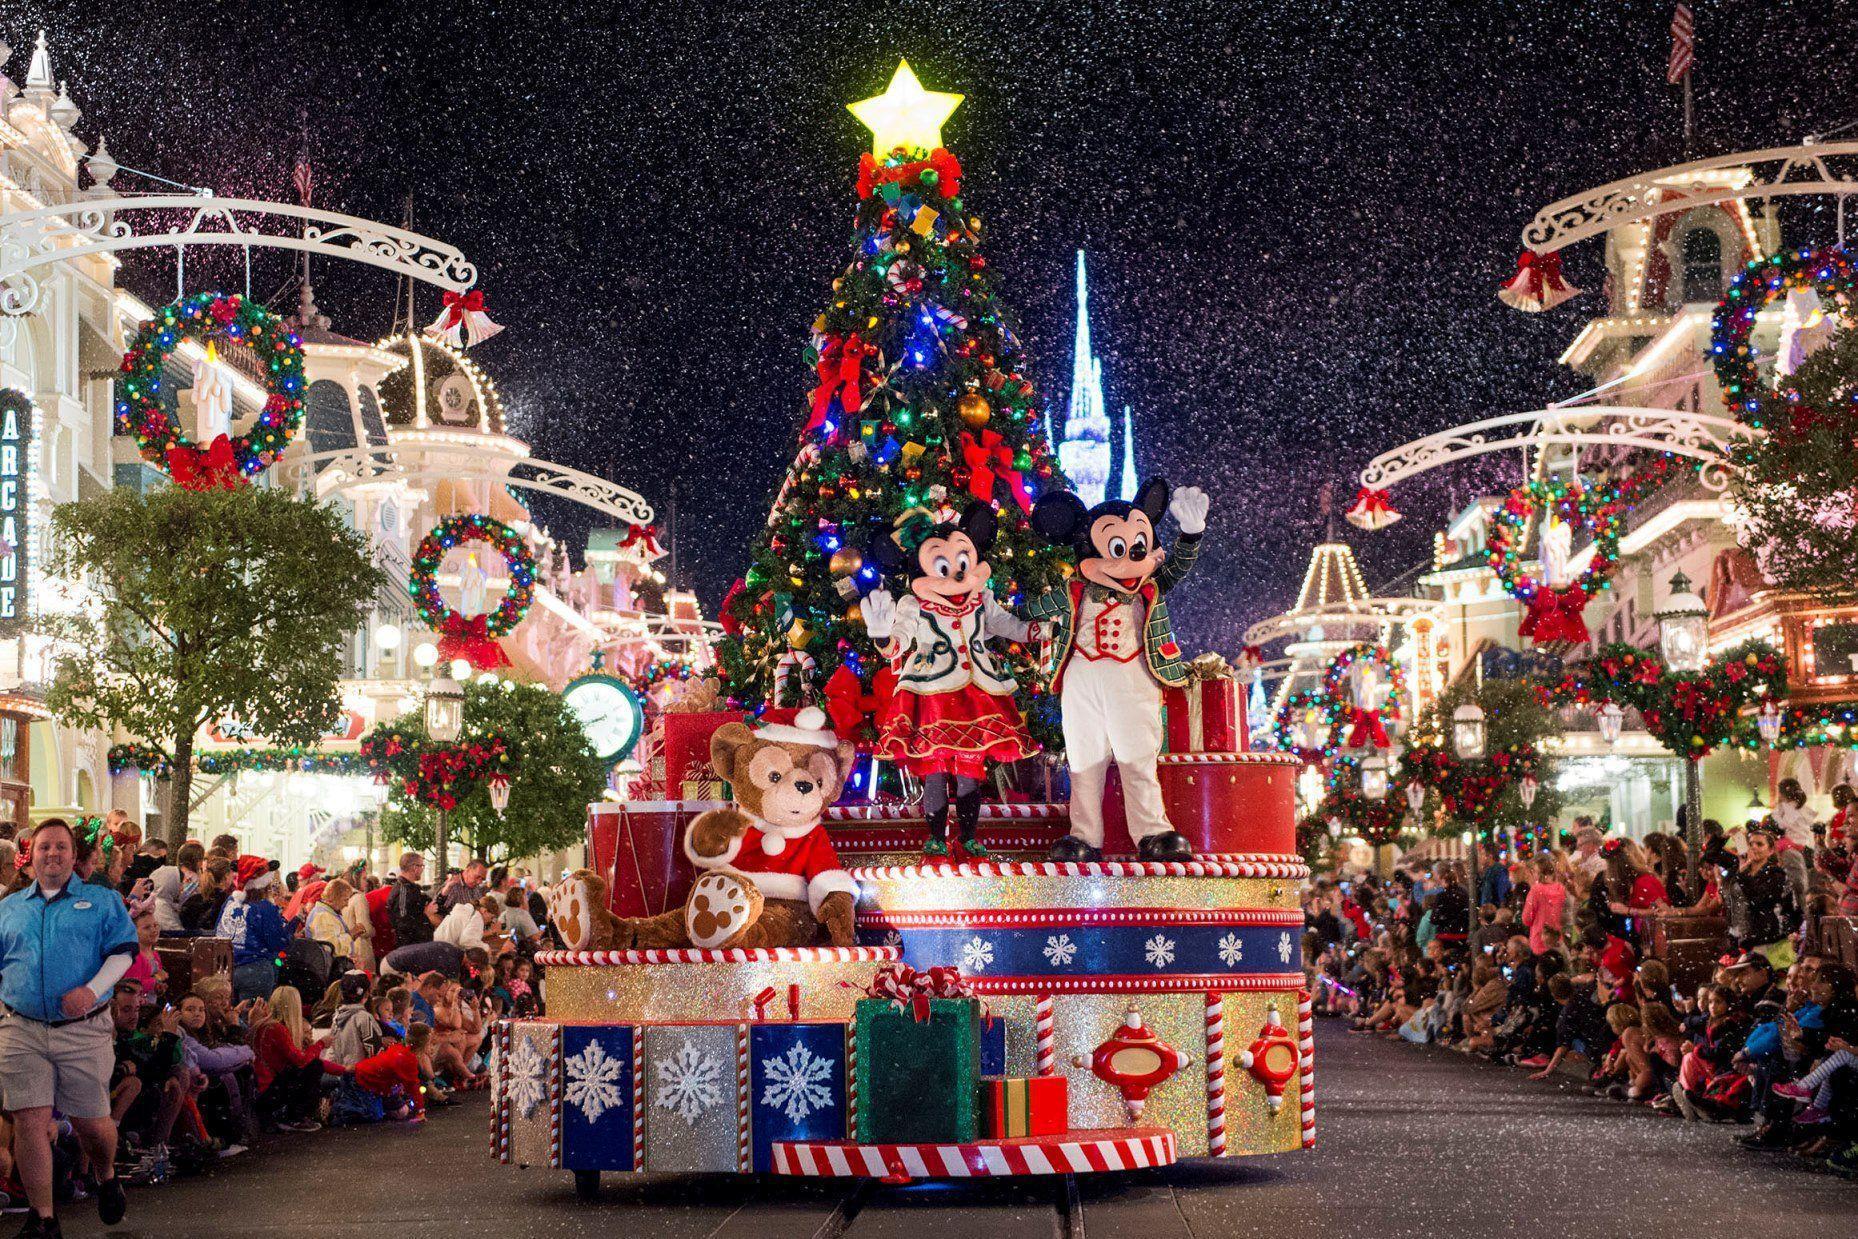 40 fotos que provam que o Natal na Disney é mágico